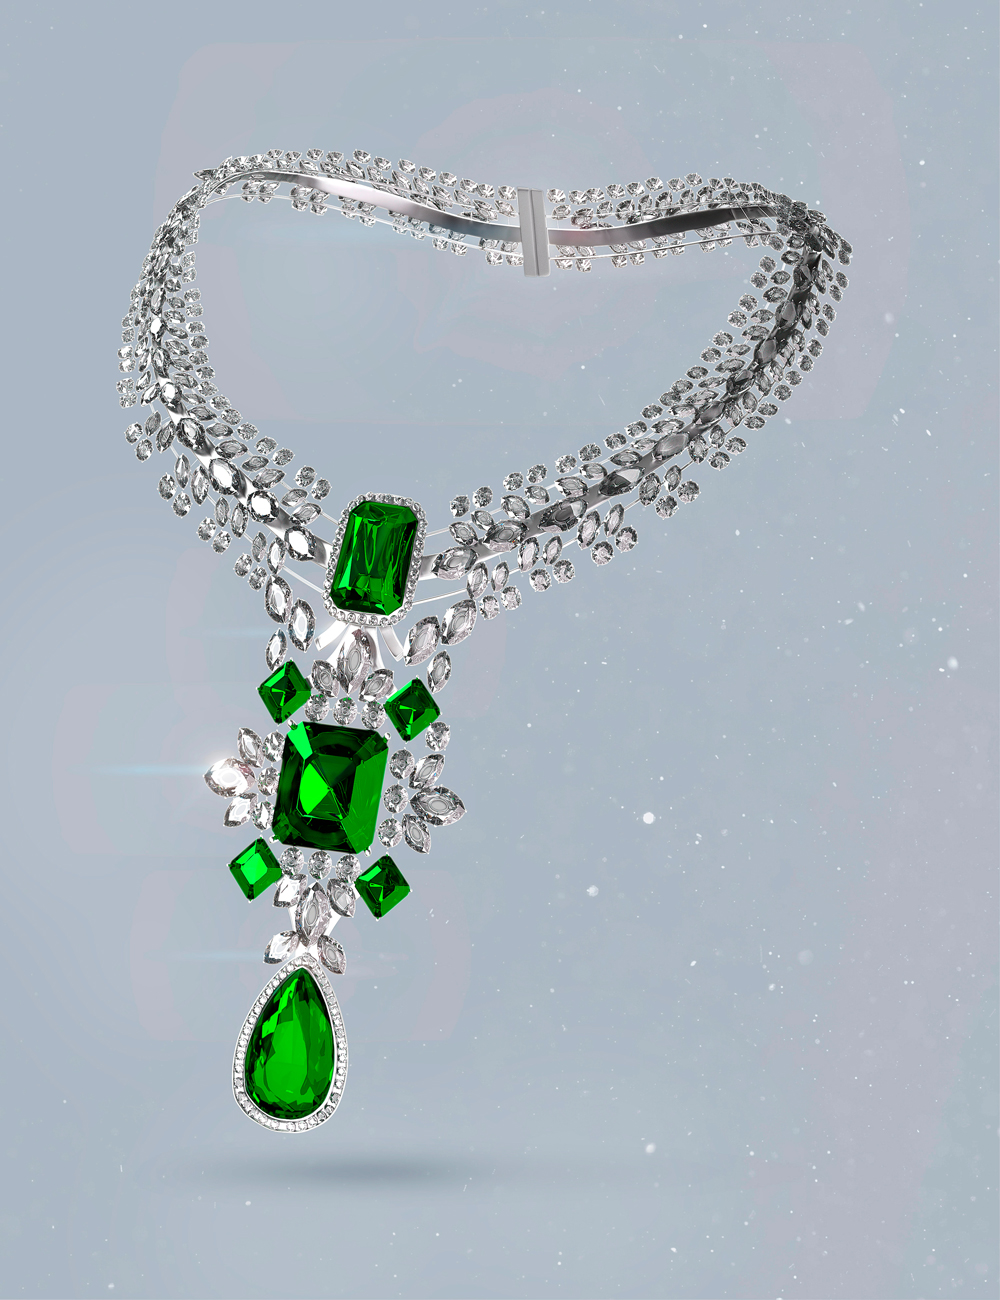 AJC Precious Lady Jewelry for Genesis 9 by: adeilsonjc, 3D Models by Daz 3D